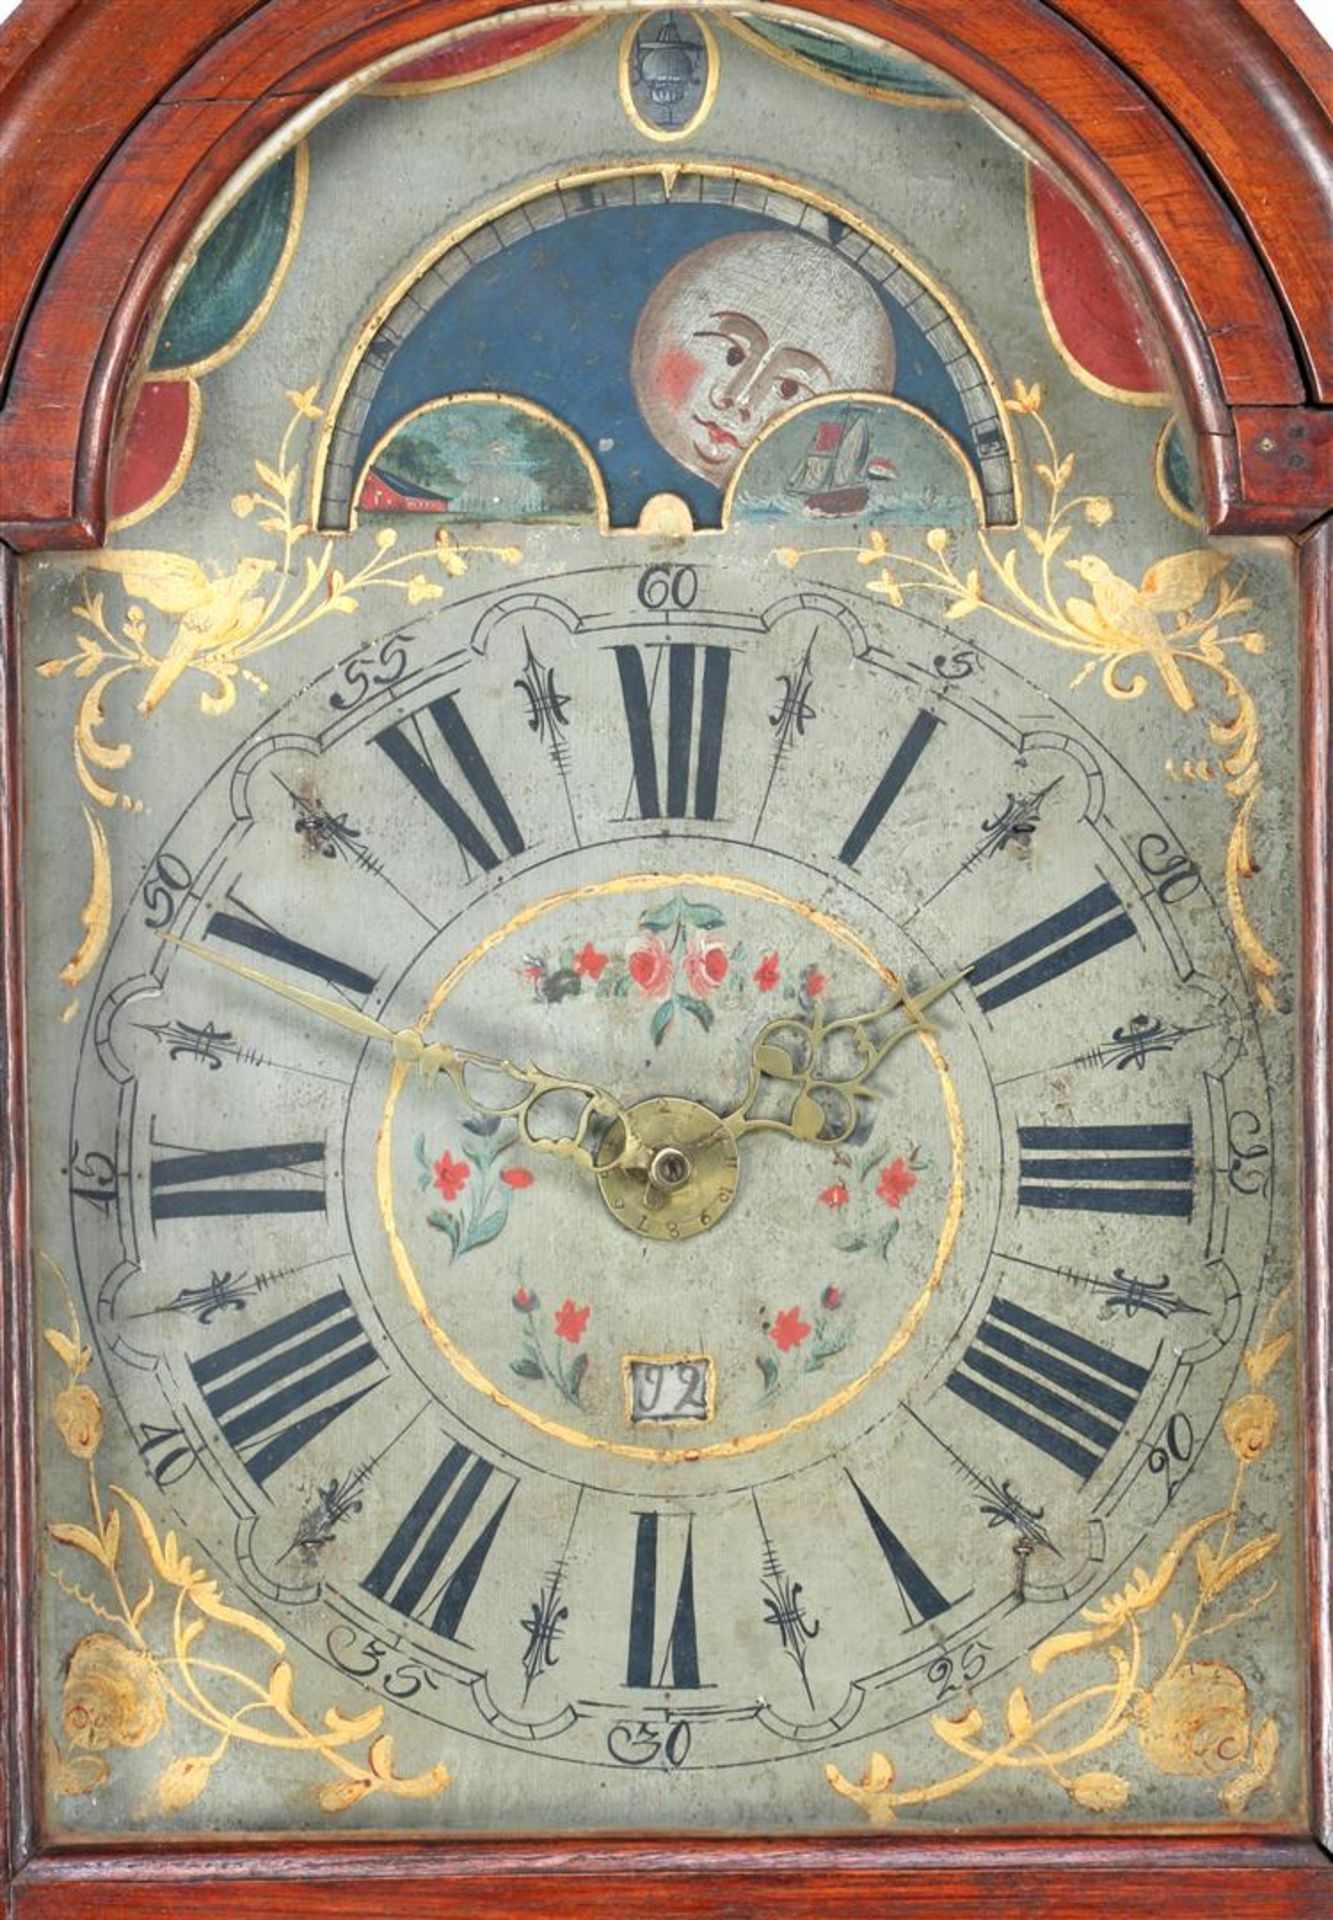 Frisian sraart clock - Bild 2 aus 2